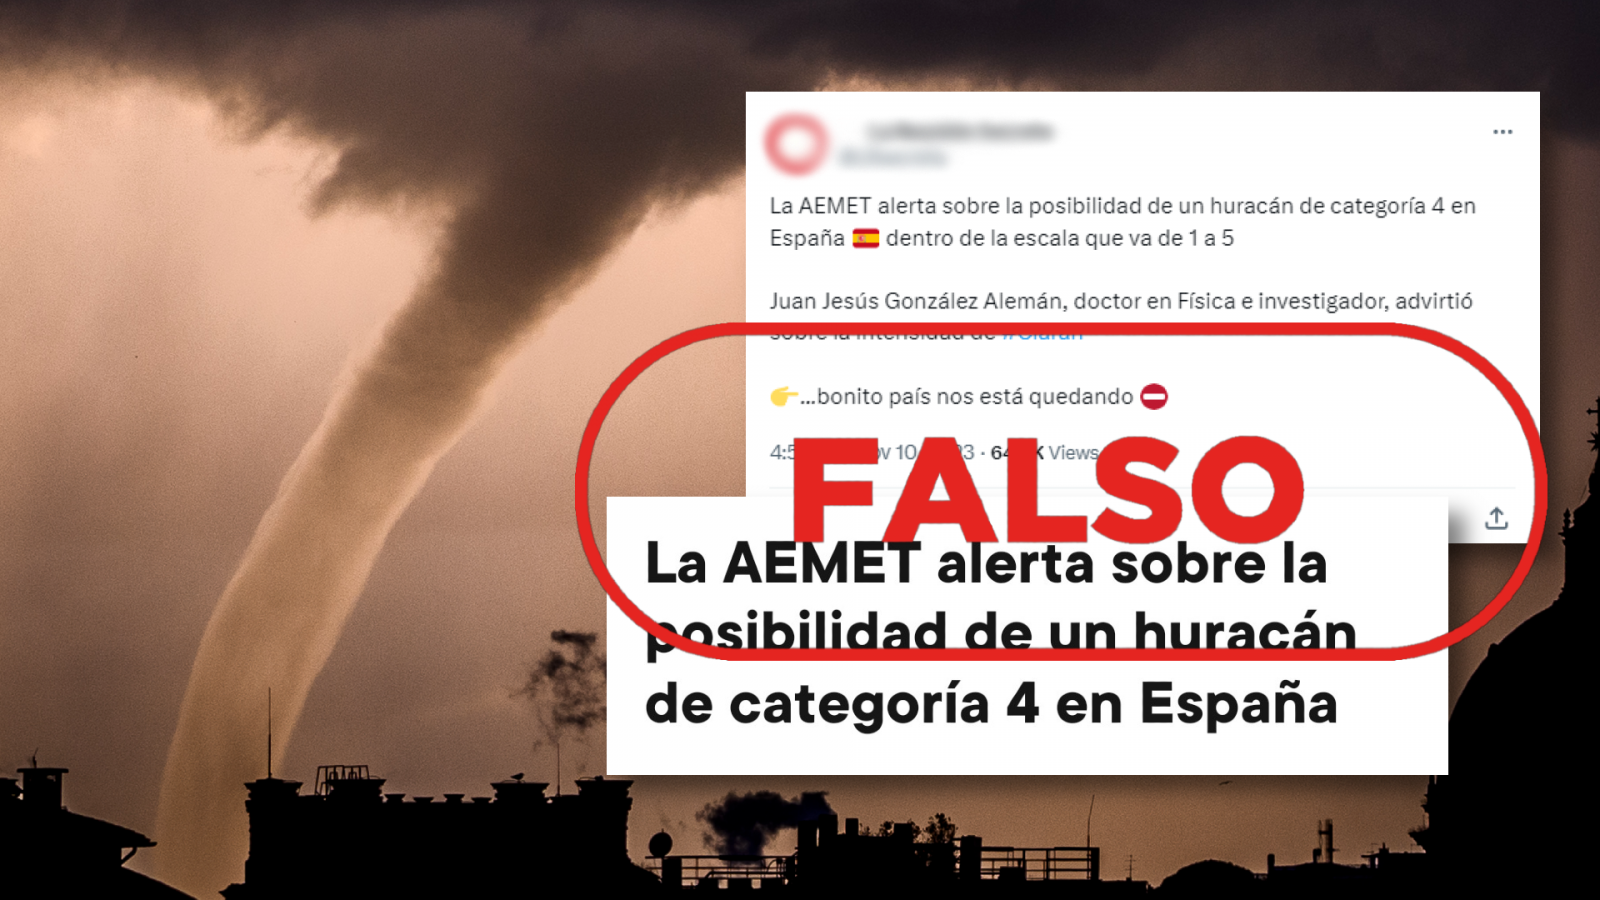 Huracán de categoría 4 en España: La AEMET desmiente que haya una alerta de un fenómeno meteorológico de esta magnitud en el país, con el sello Falso en rojo de VerificaRTVE.